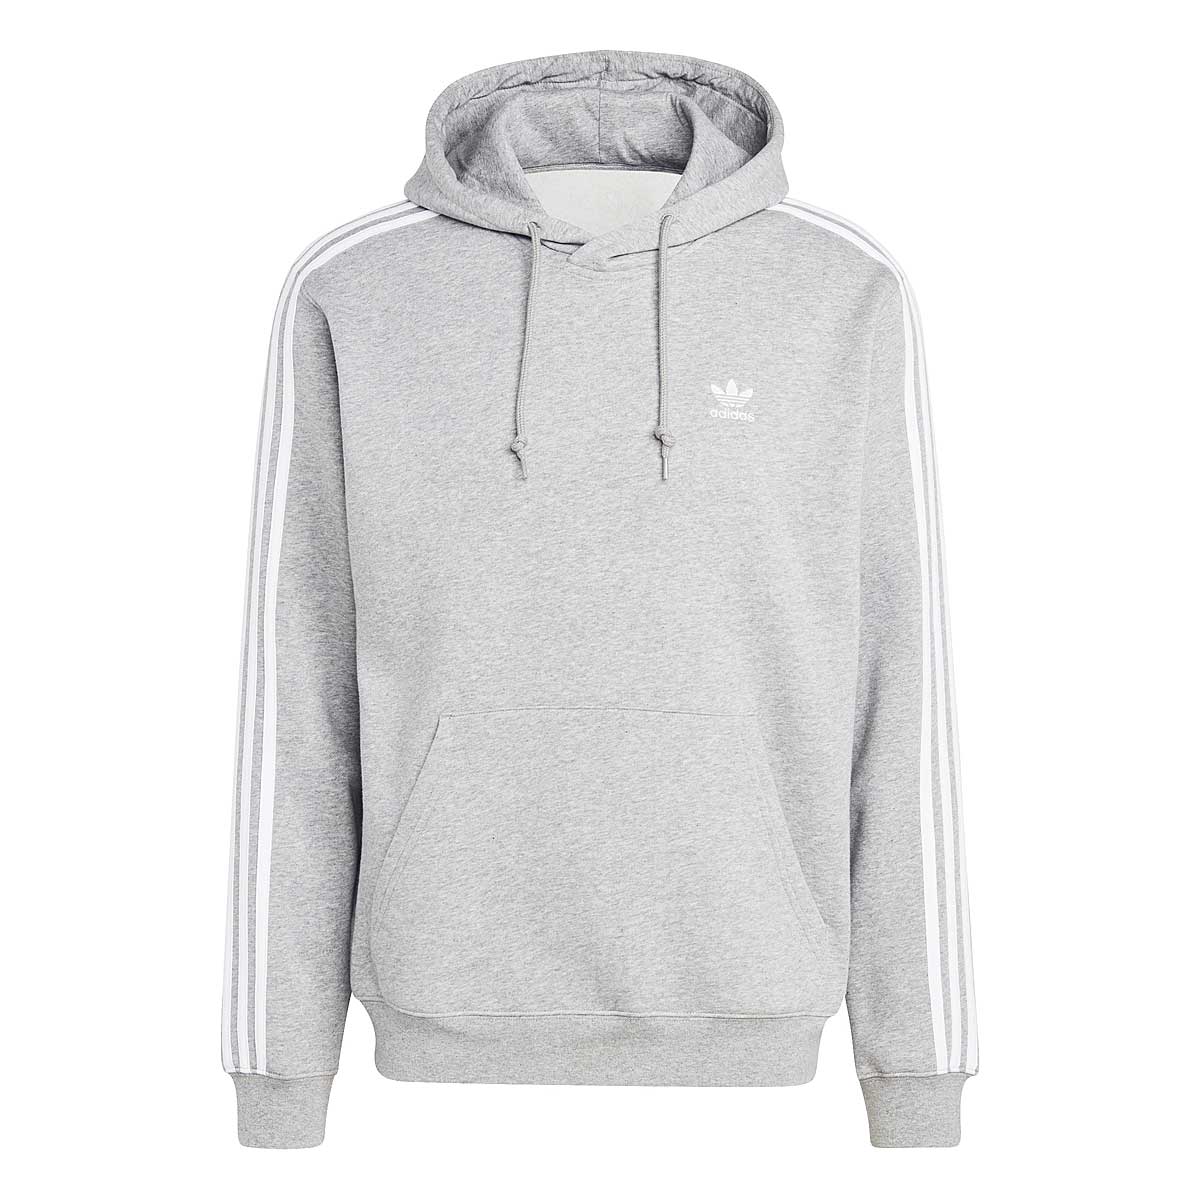 Adidas 3-stripes Hoody, Grey M